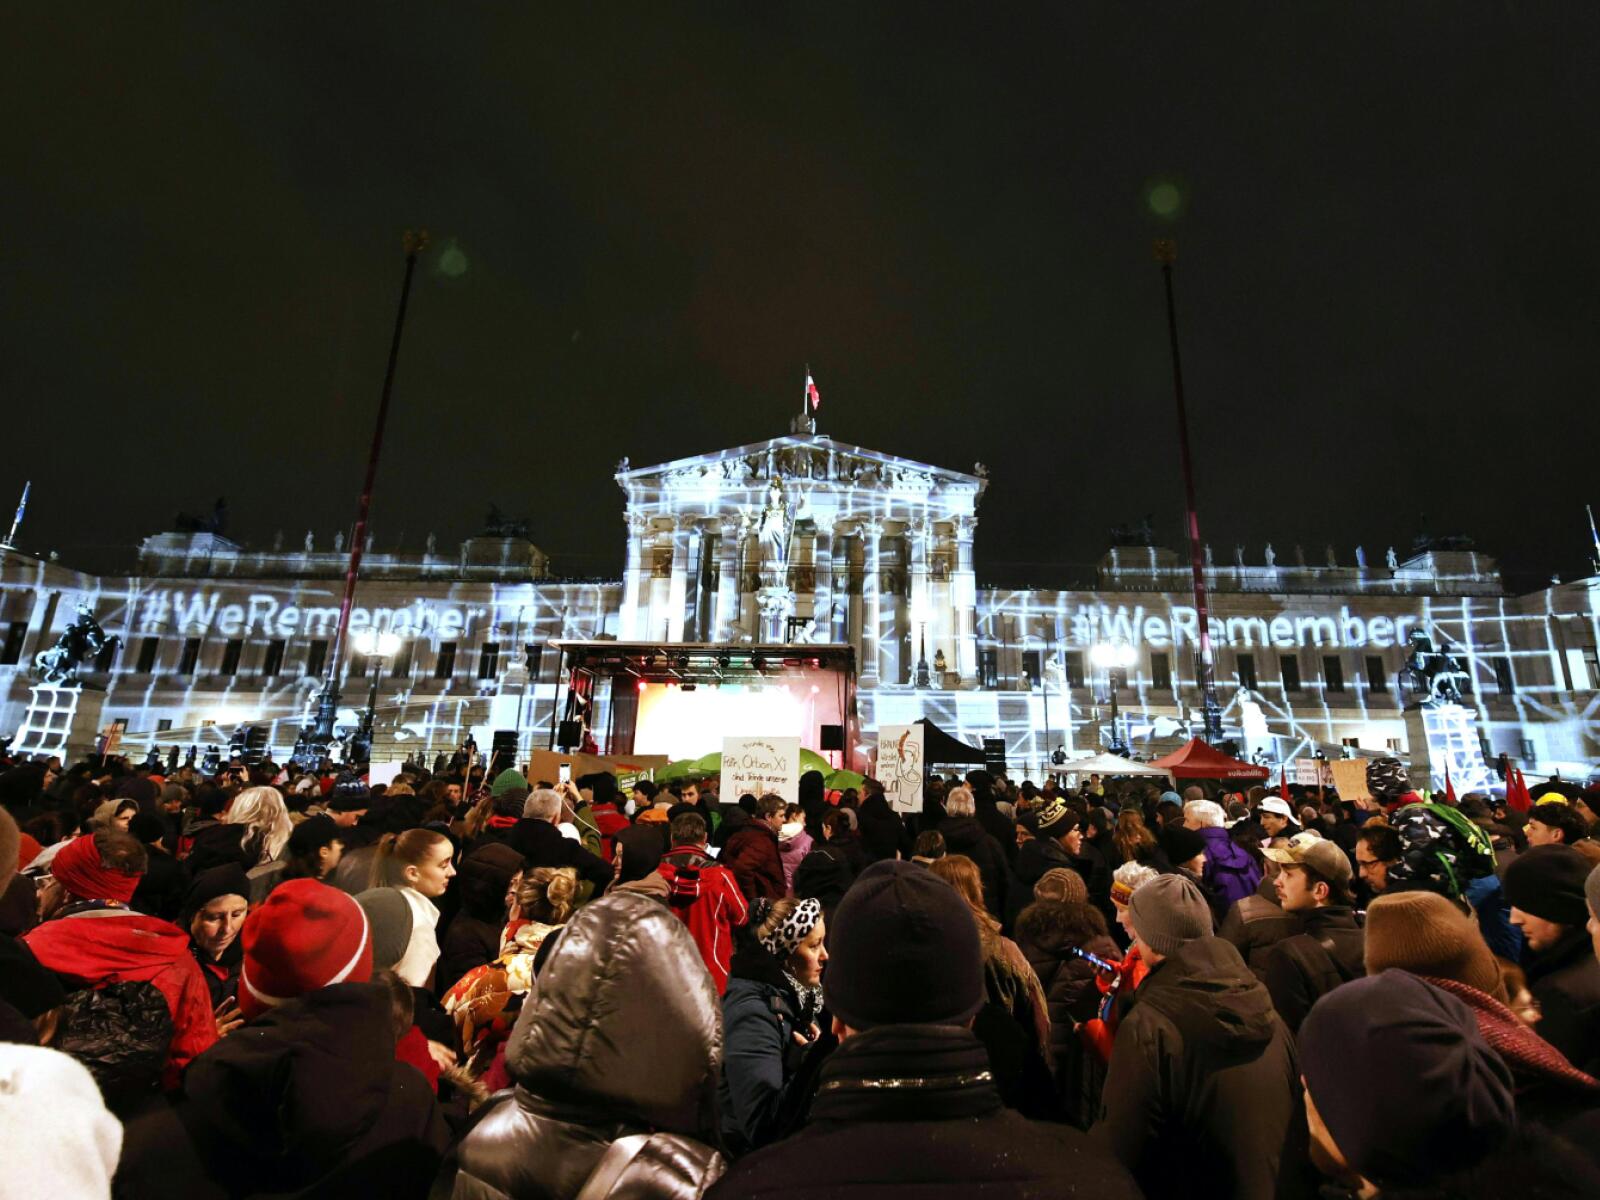 lichteraktion gegen rechts in ganz österreich geplant